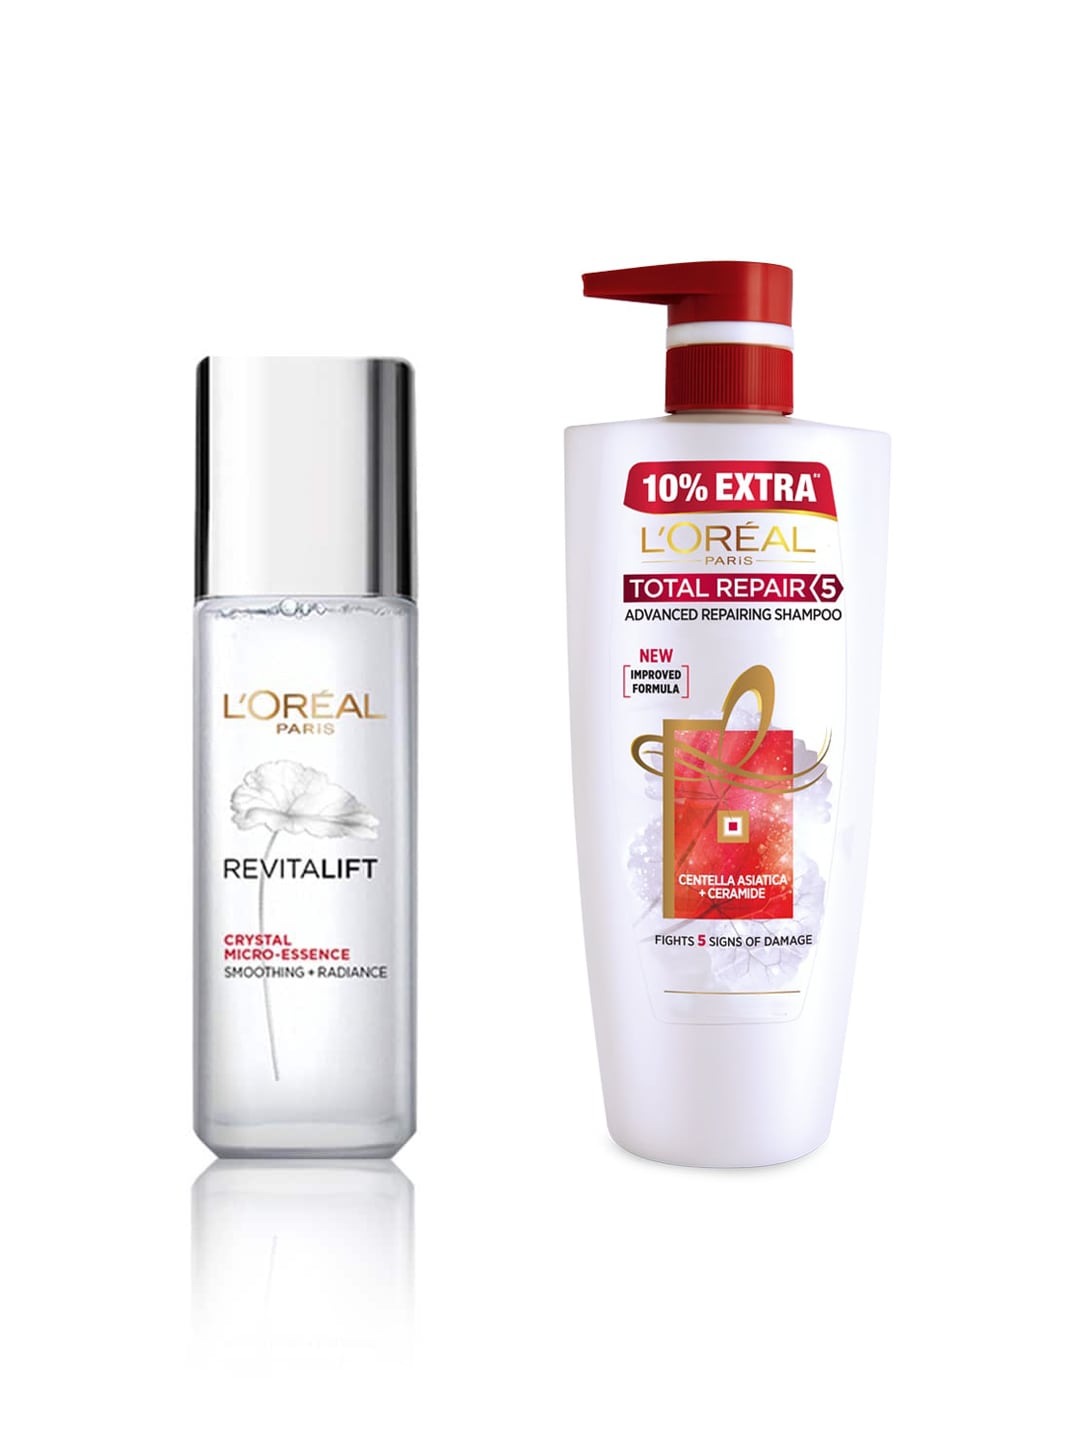 LOreal Paris Total Repair 5 Advanced Repairing Shampoo & Revitalift Crystal Face Serum Price in India